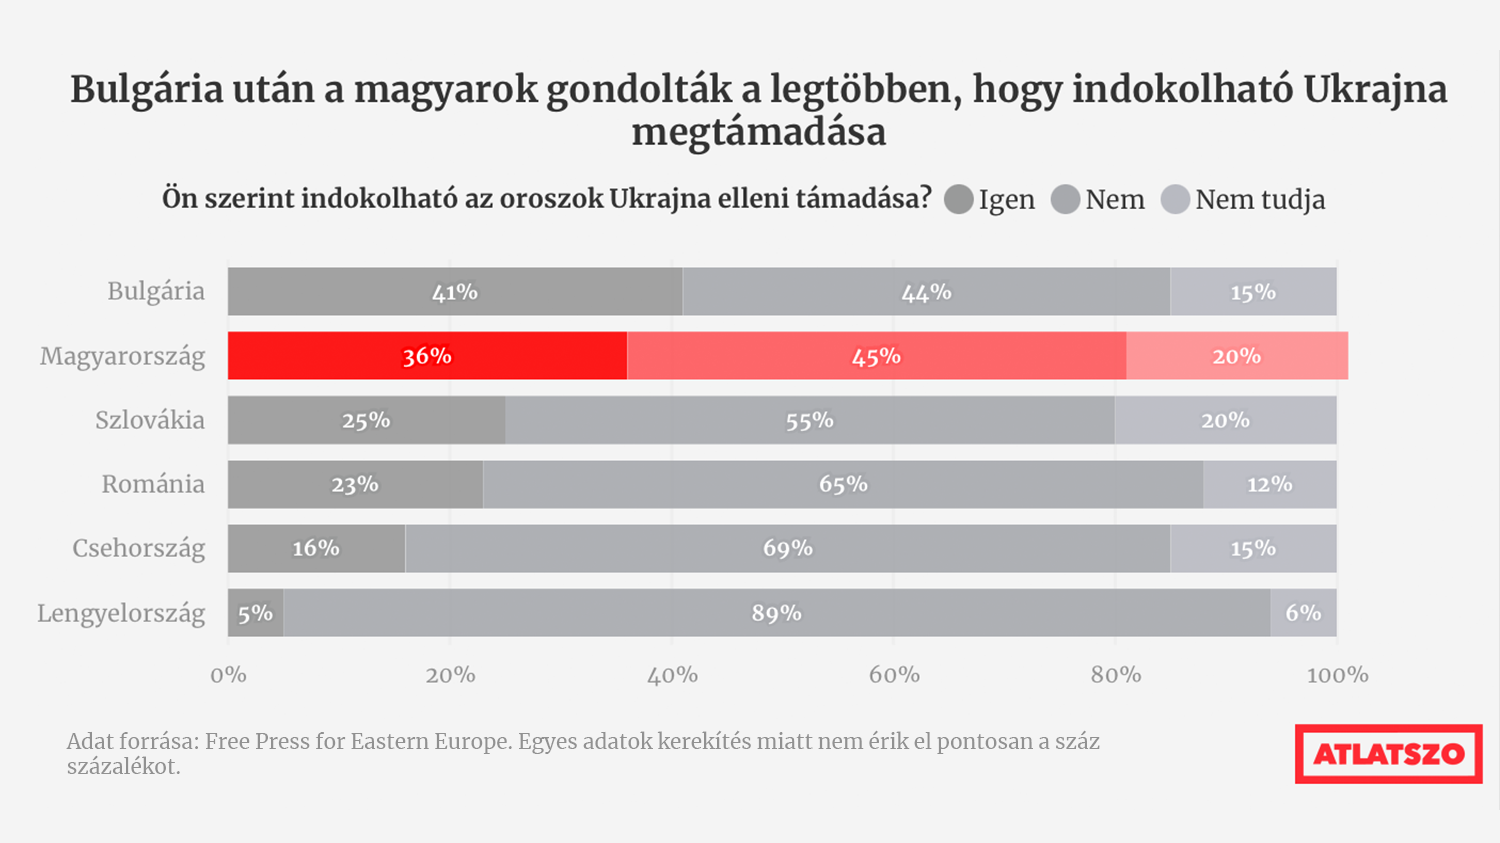 Közép-Kelet-Európában a magyarok a leginkább oroszpártiak és EU-szkeptikusok egy közvéleménykutatás szerint | atlatszo.hu